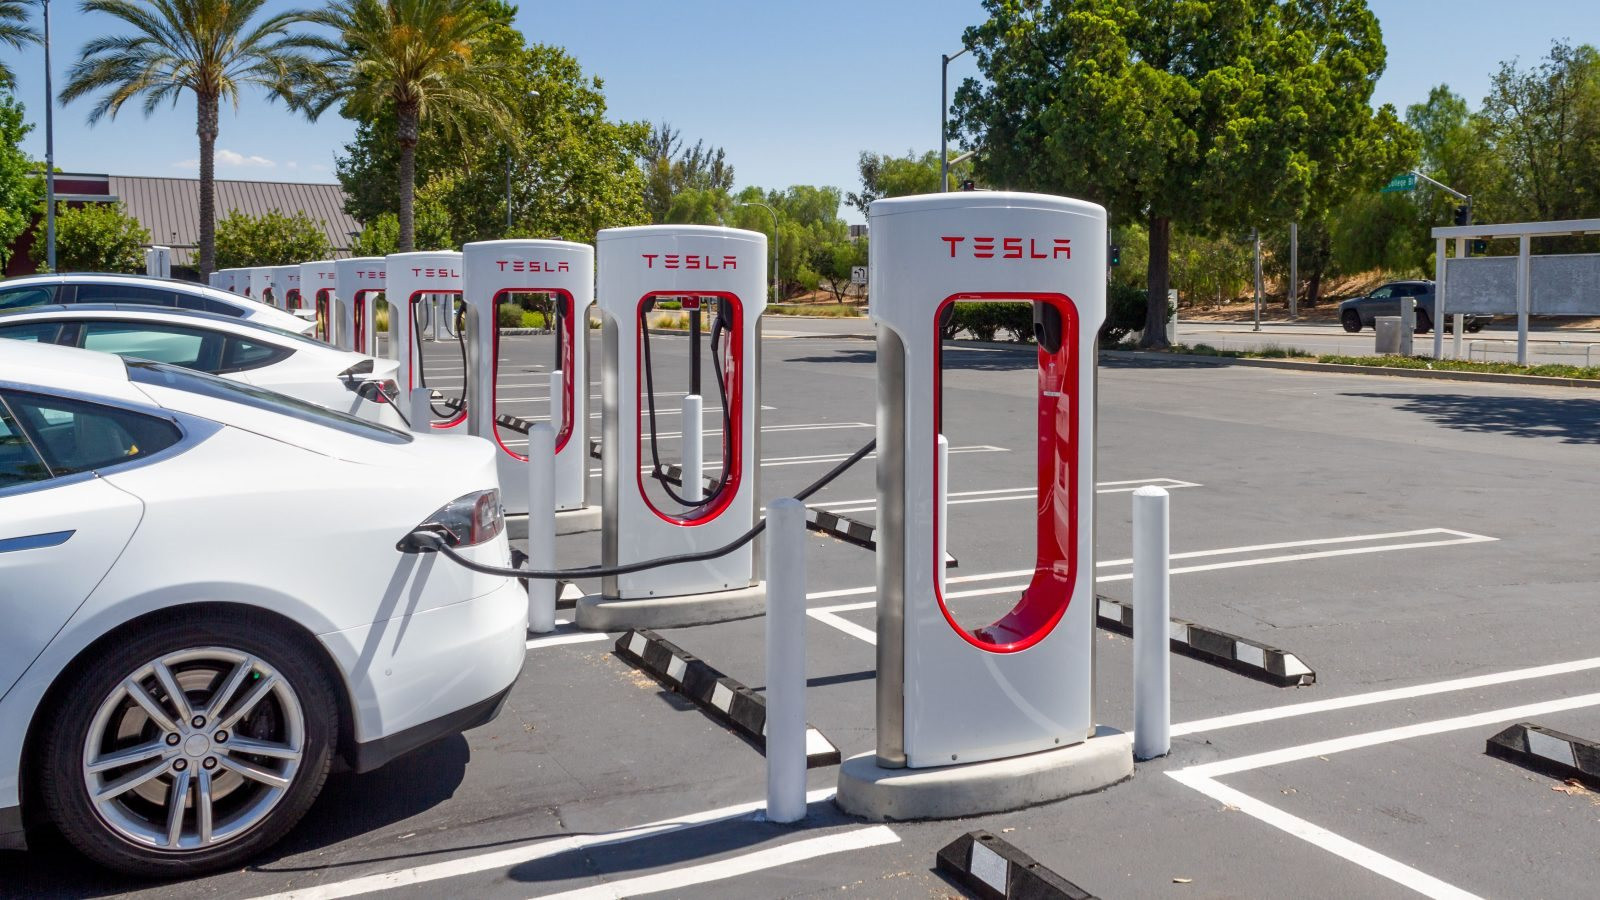 Lo sợ một ngày hệ thống trạm sạc Tesla thống trị nước Mỹ, 7 nhà sản xuất ô tô liền lập liên doanh cung cấp dịch vụ sạc xe điện - liệu VinFast có gia nhập? - Ảnh 2.